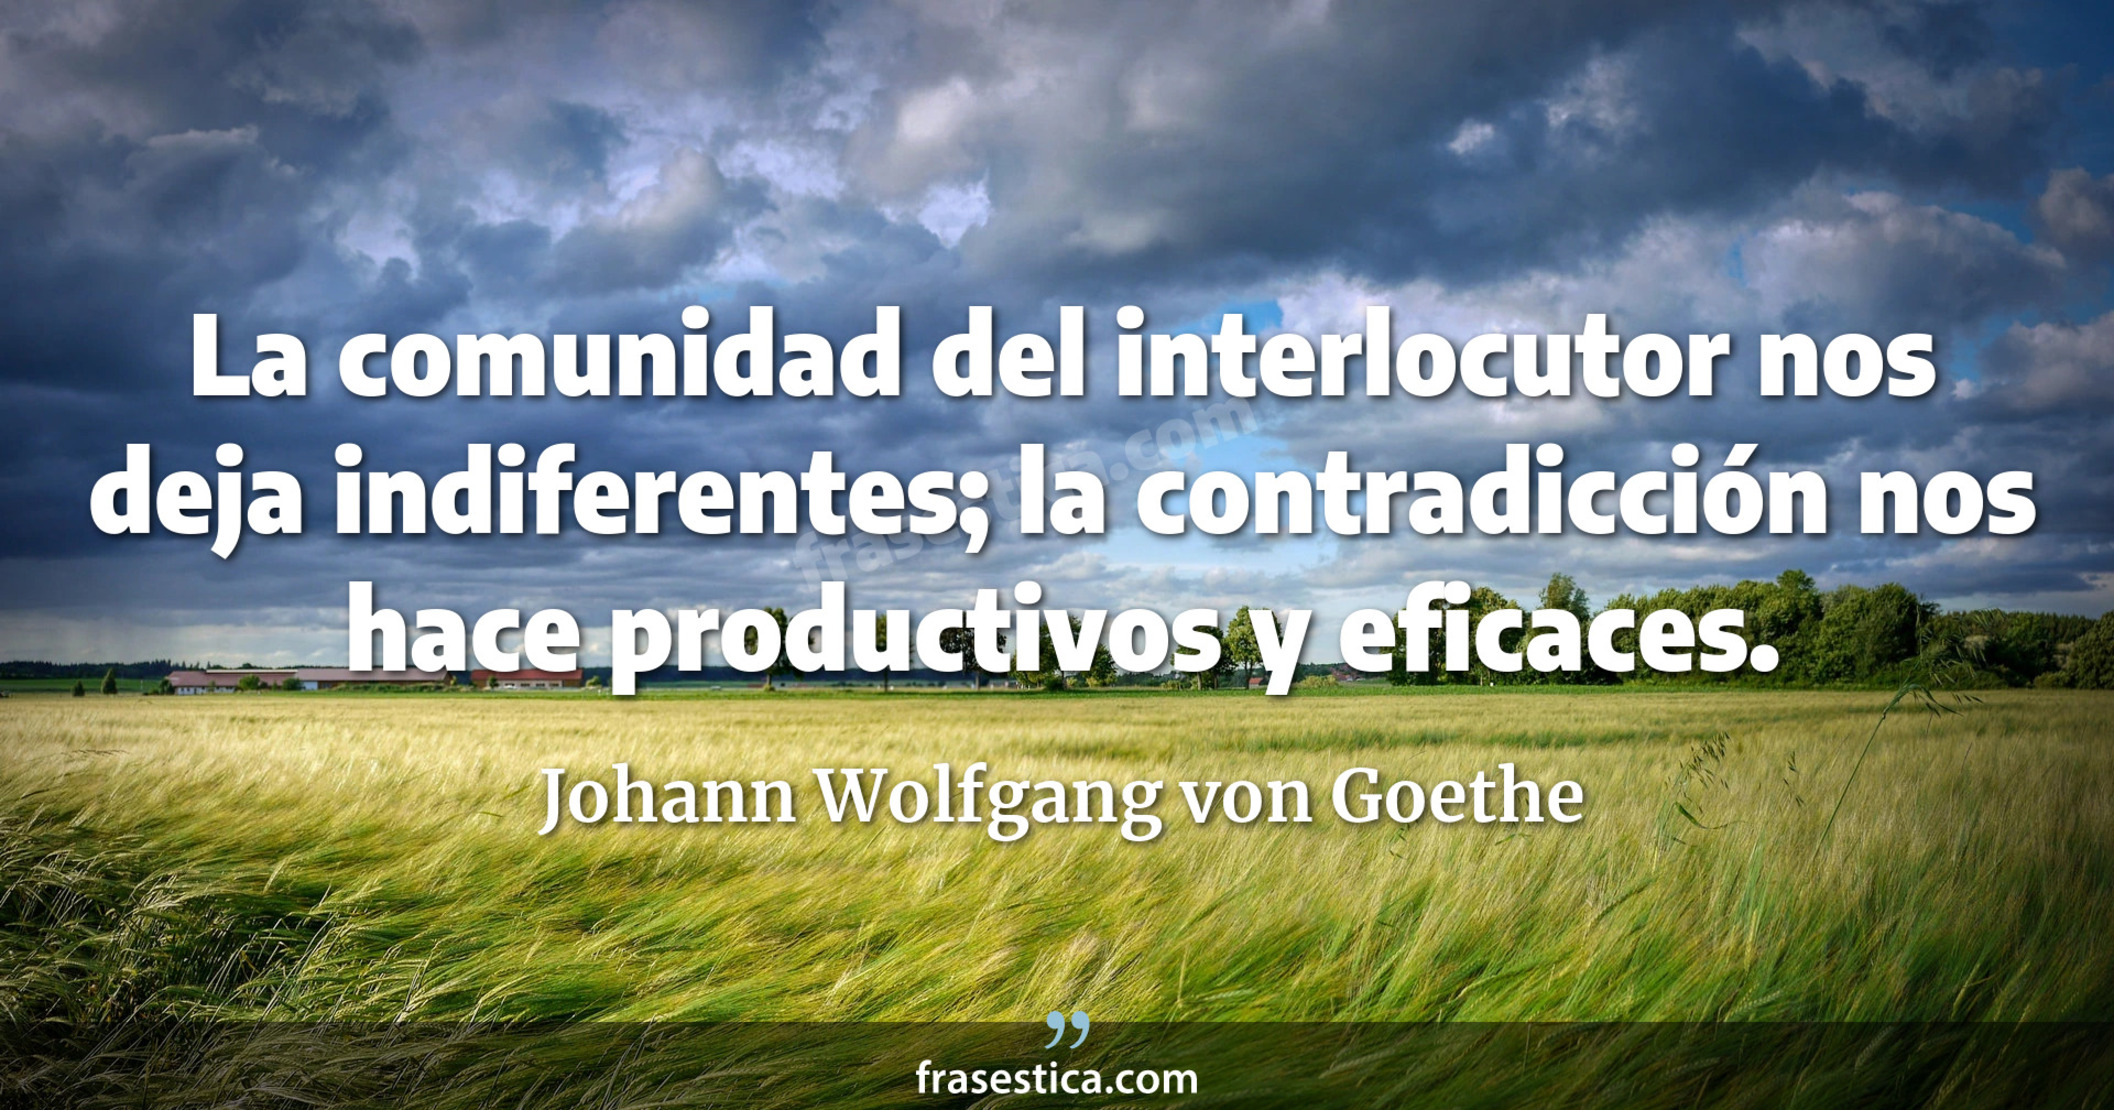 La comunidad del interlocutor nos deja indiferentes; la contradicción nos hace productivos y eficaces. - Johann Wolfgang von Goethe